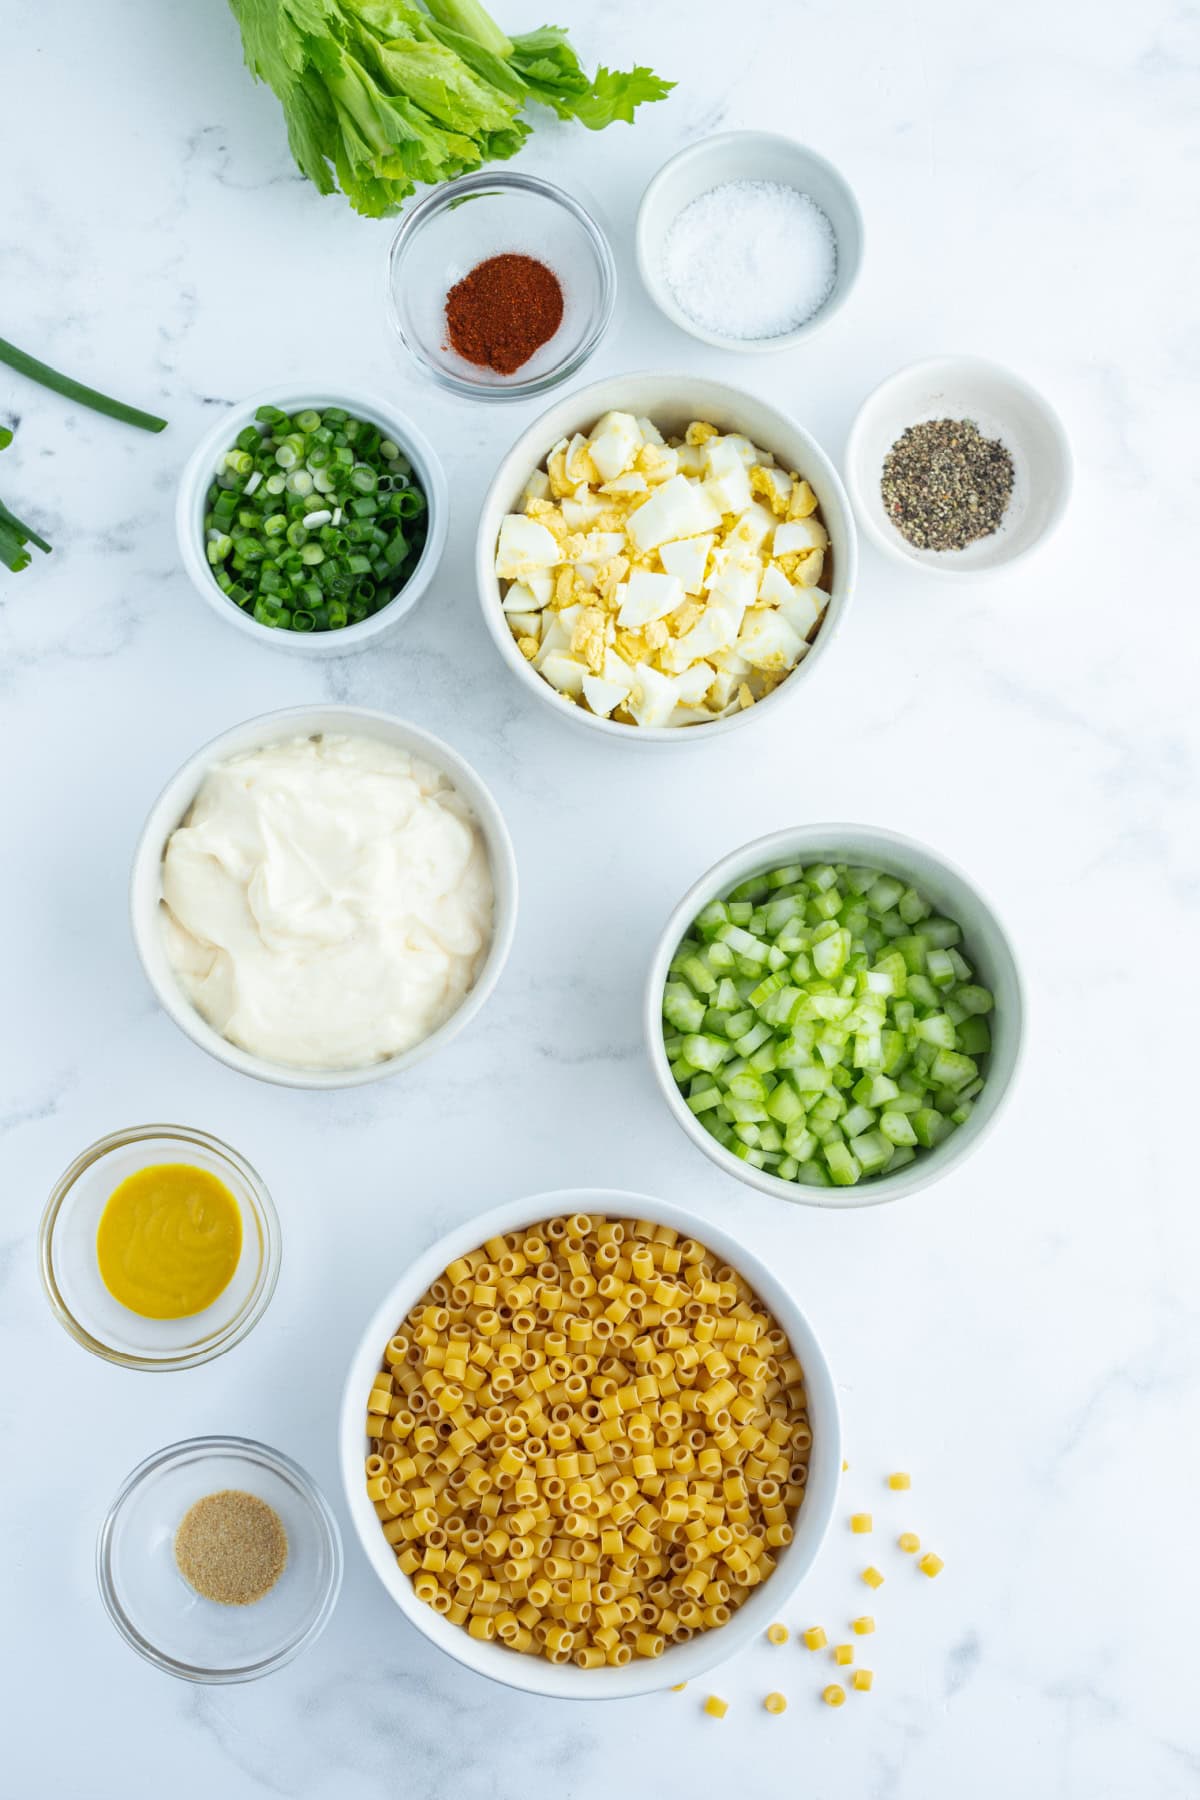 ingredients displayed for making old fashioned macaroni salad